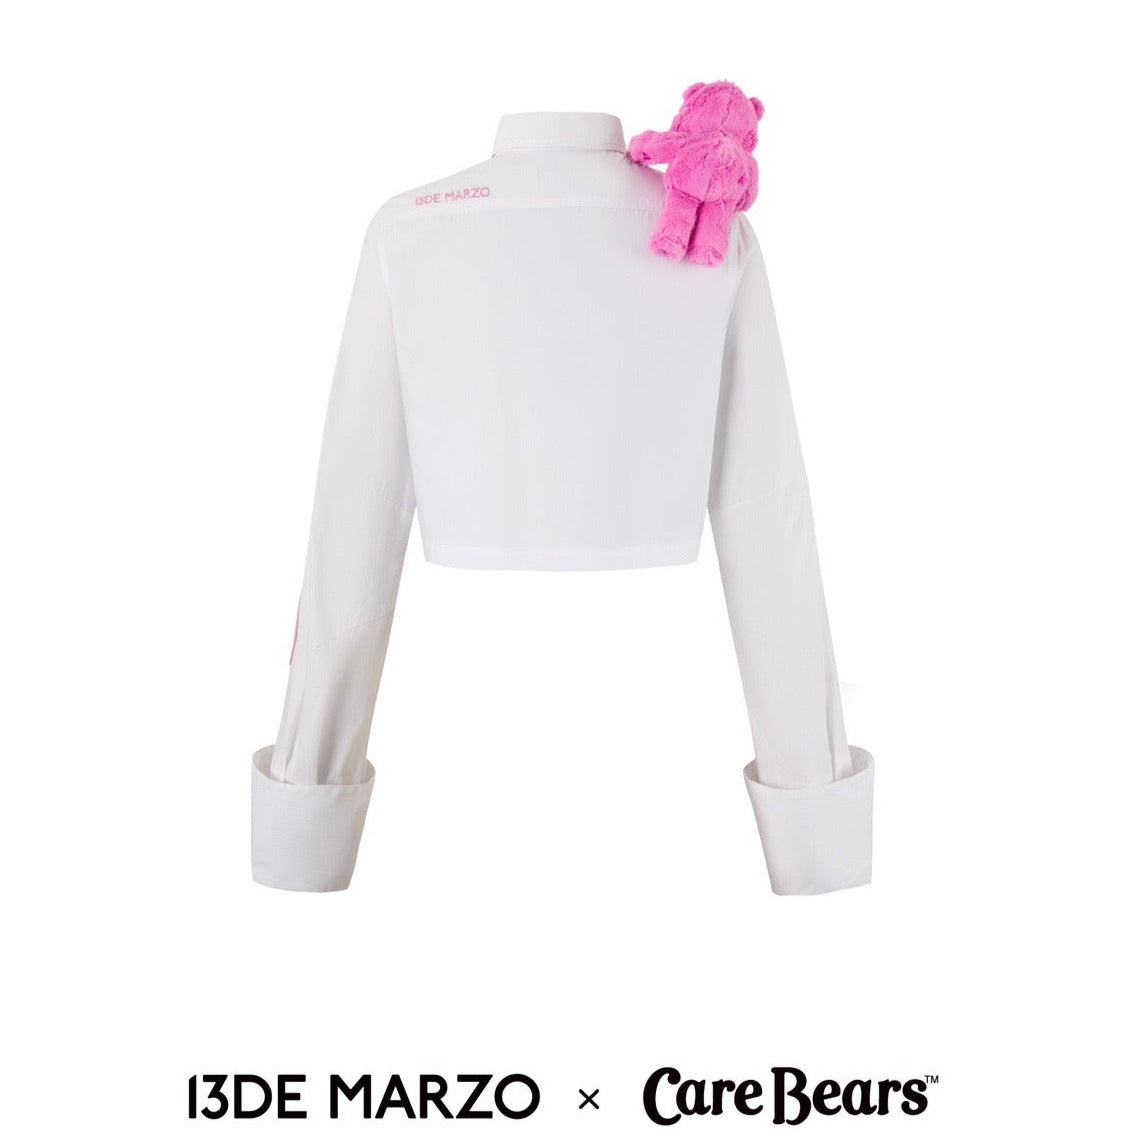 13DE MARZO x CARE BEARS Knit Vest Shirt White